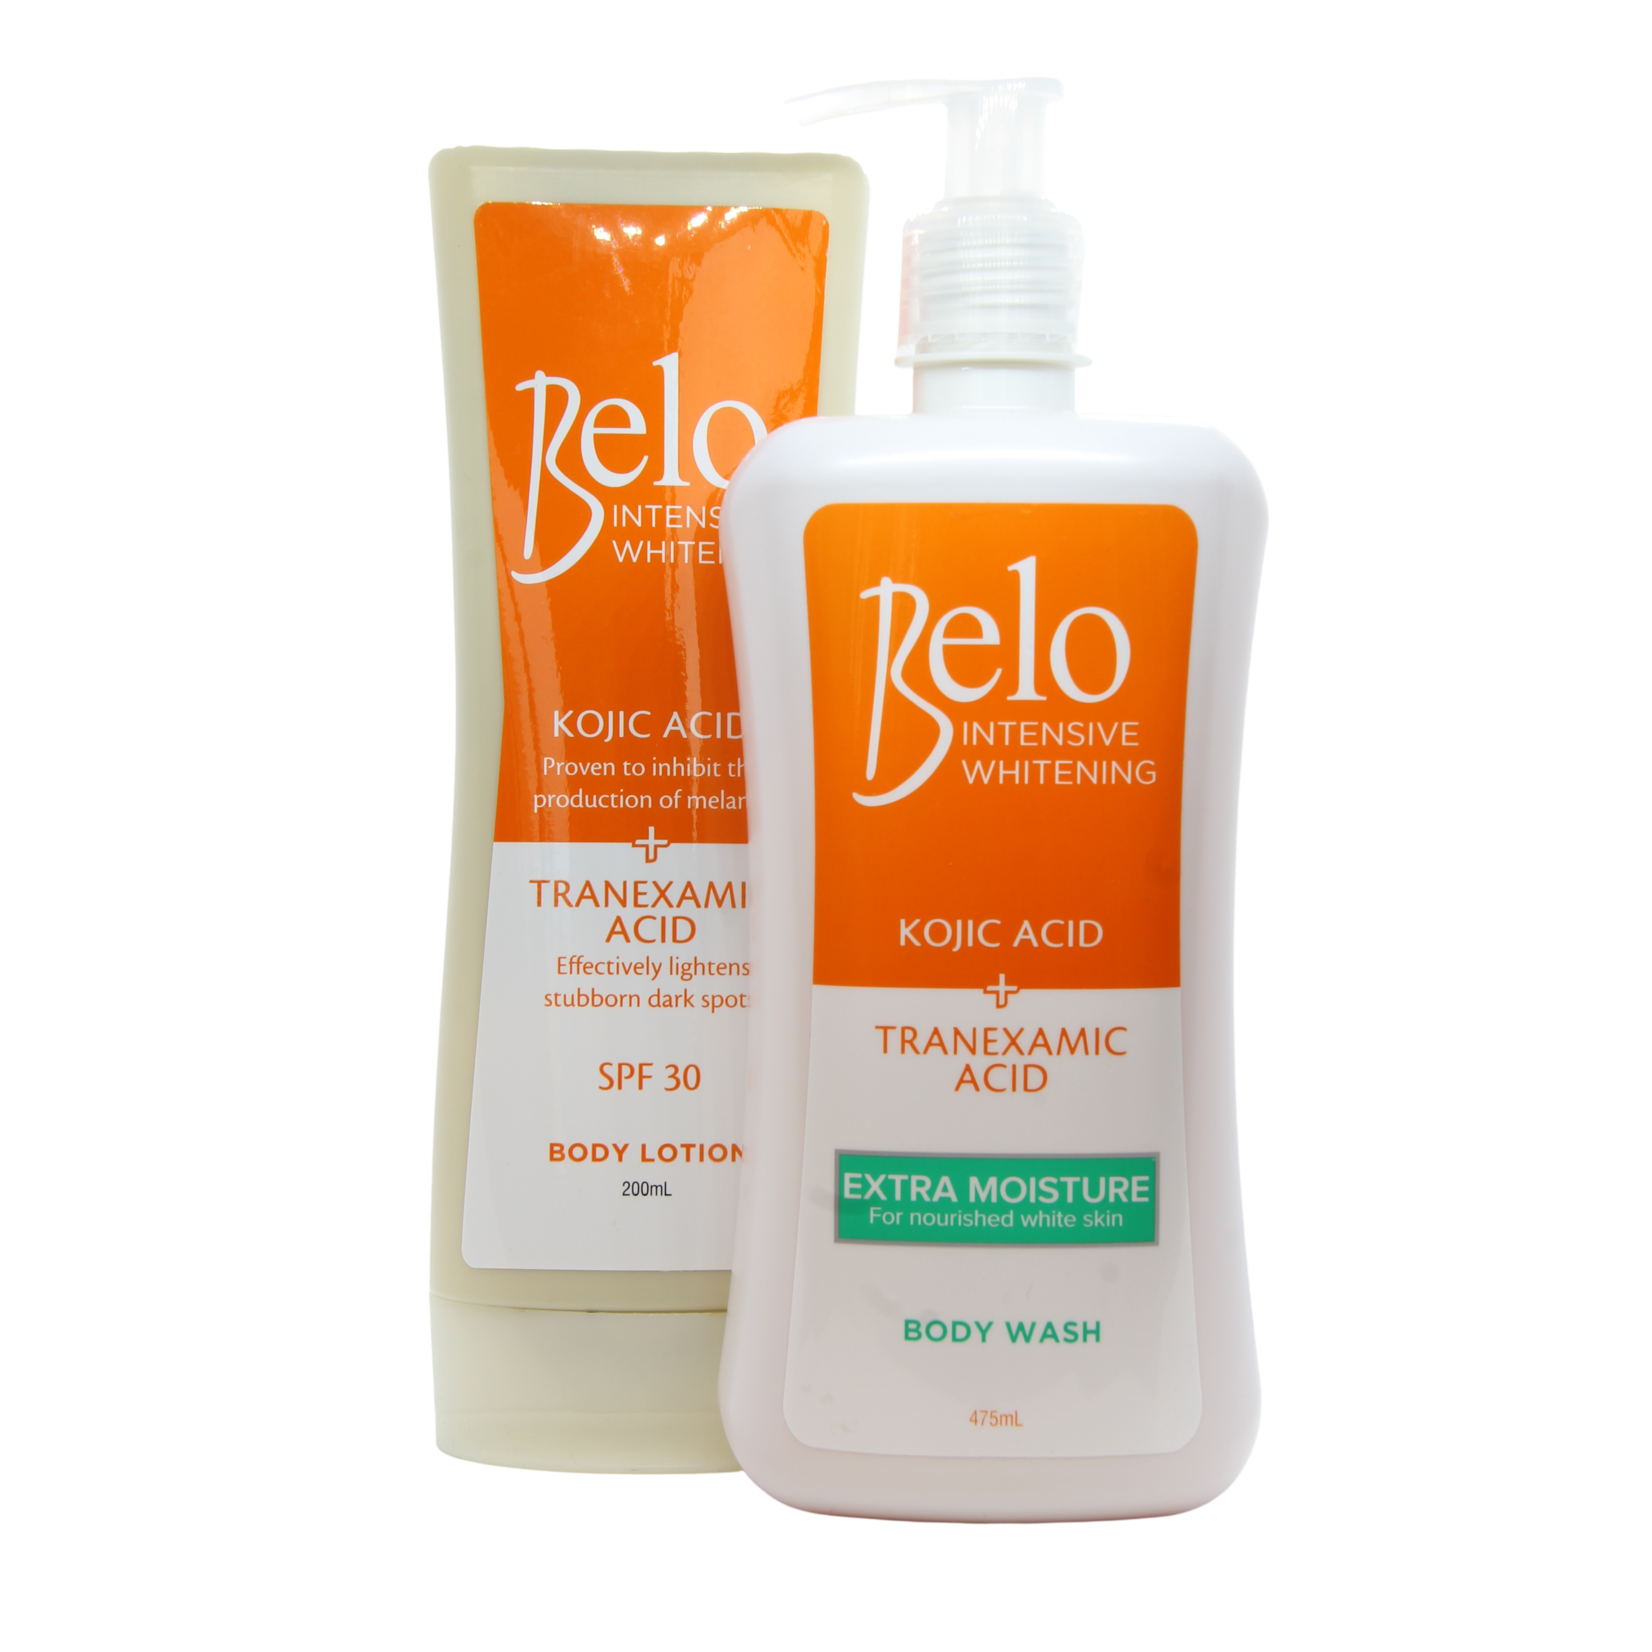 Belo, Vakkundig samengesteld om jouw unieke schoonheid te laten zien! Belo Intense skin lightening body lotion and body wash